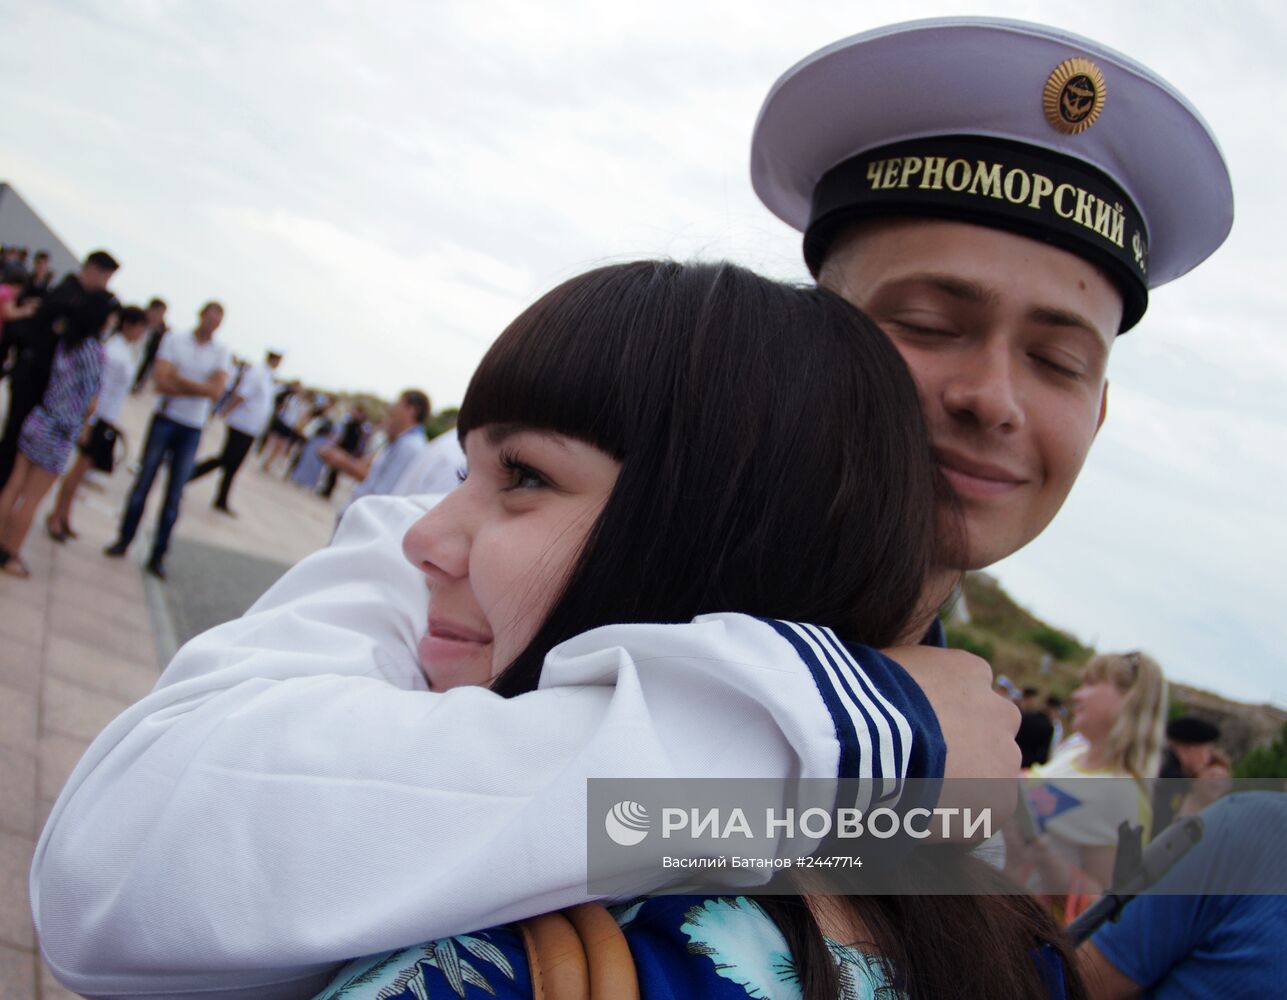 Моряки черноморского флота принимают присягу в Севастополе